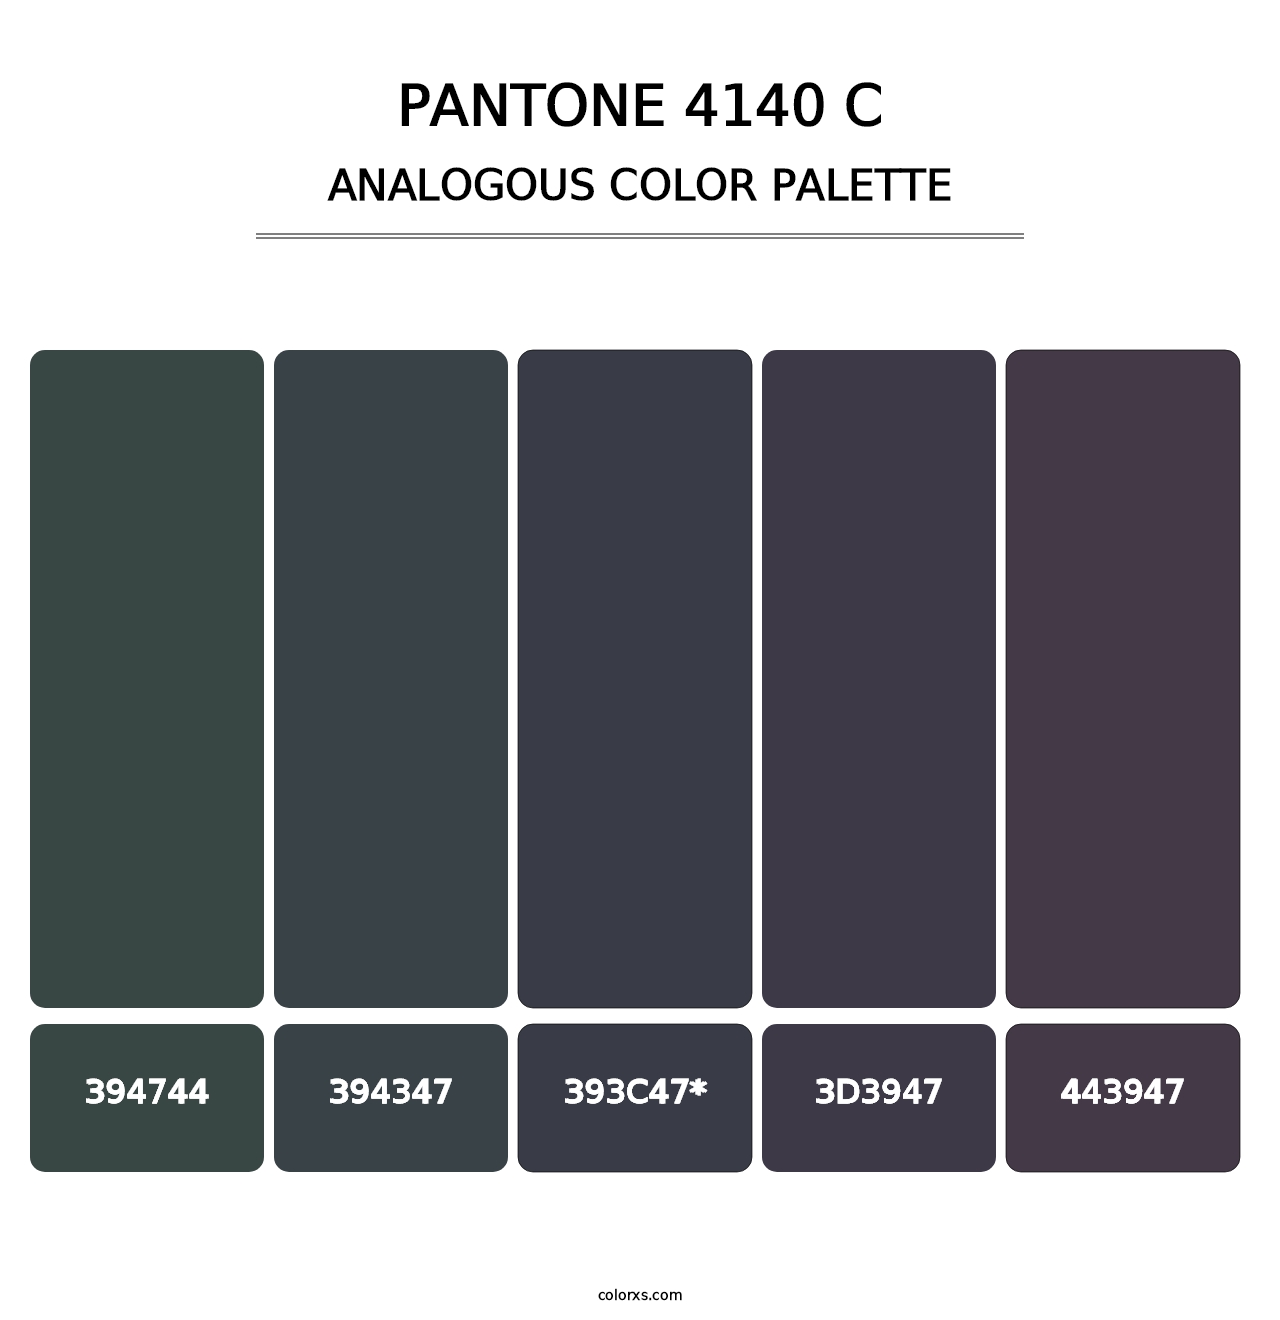 PANTONE 4140 C - Analogous Color Palette